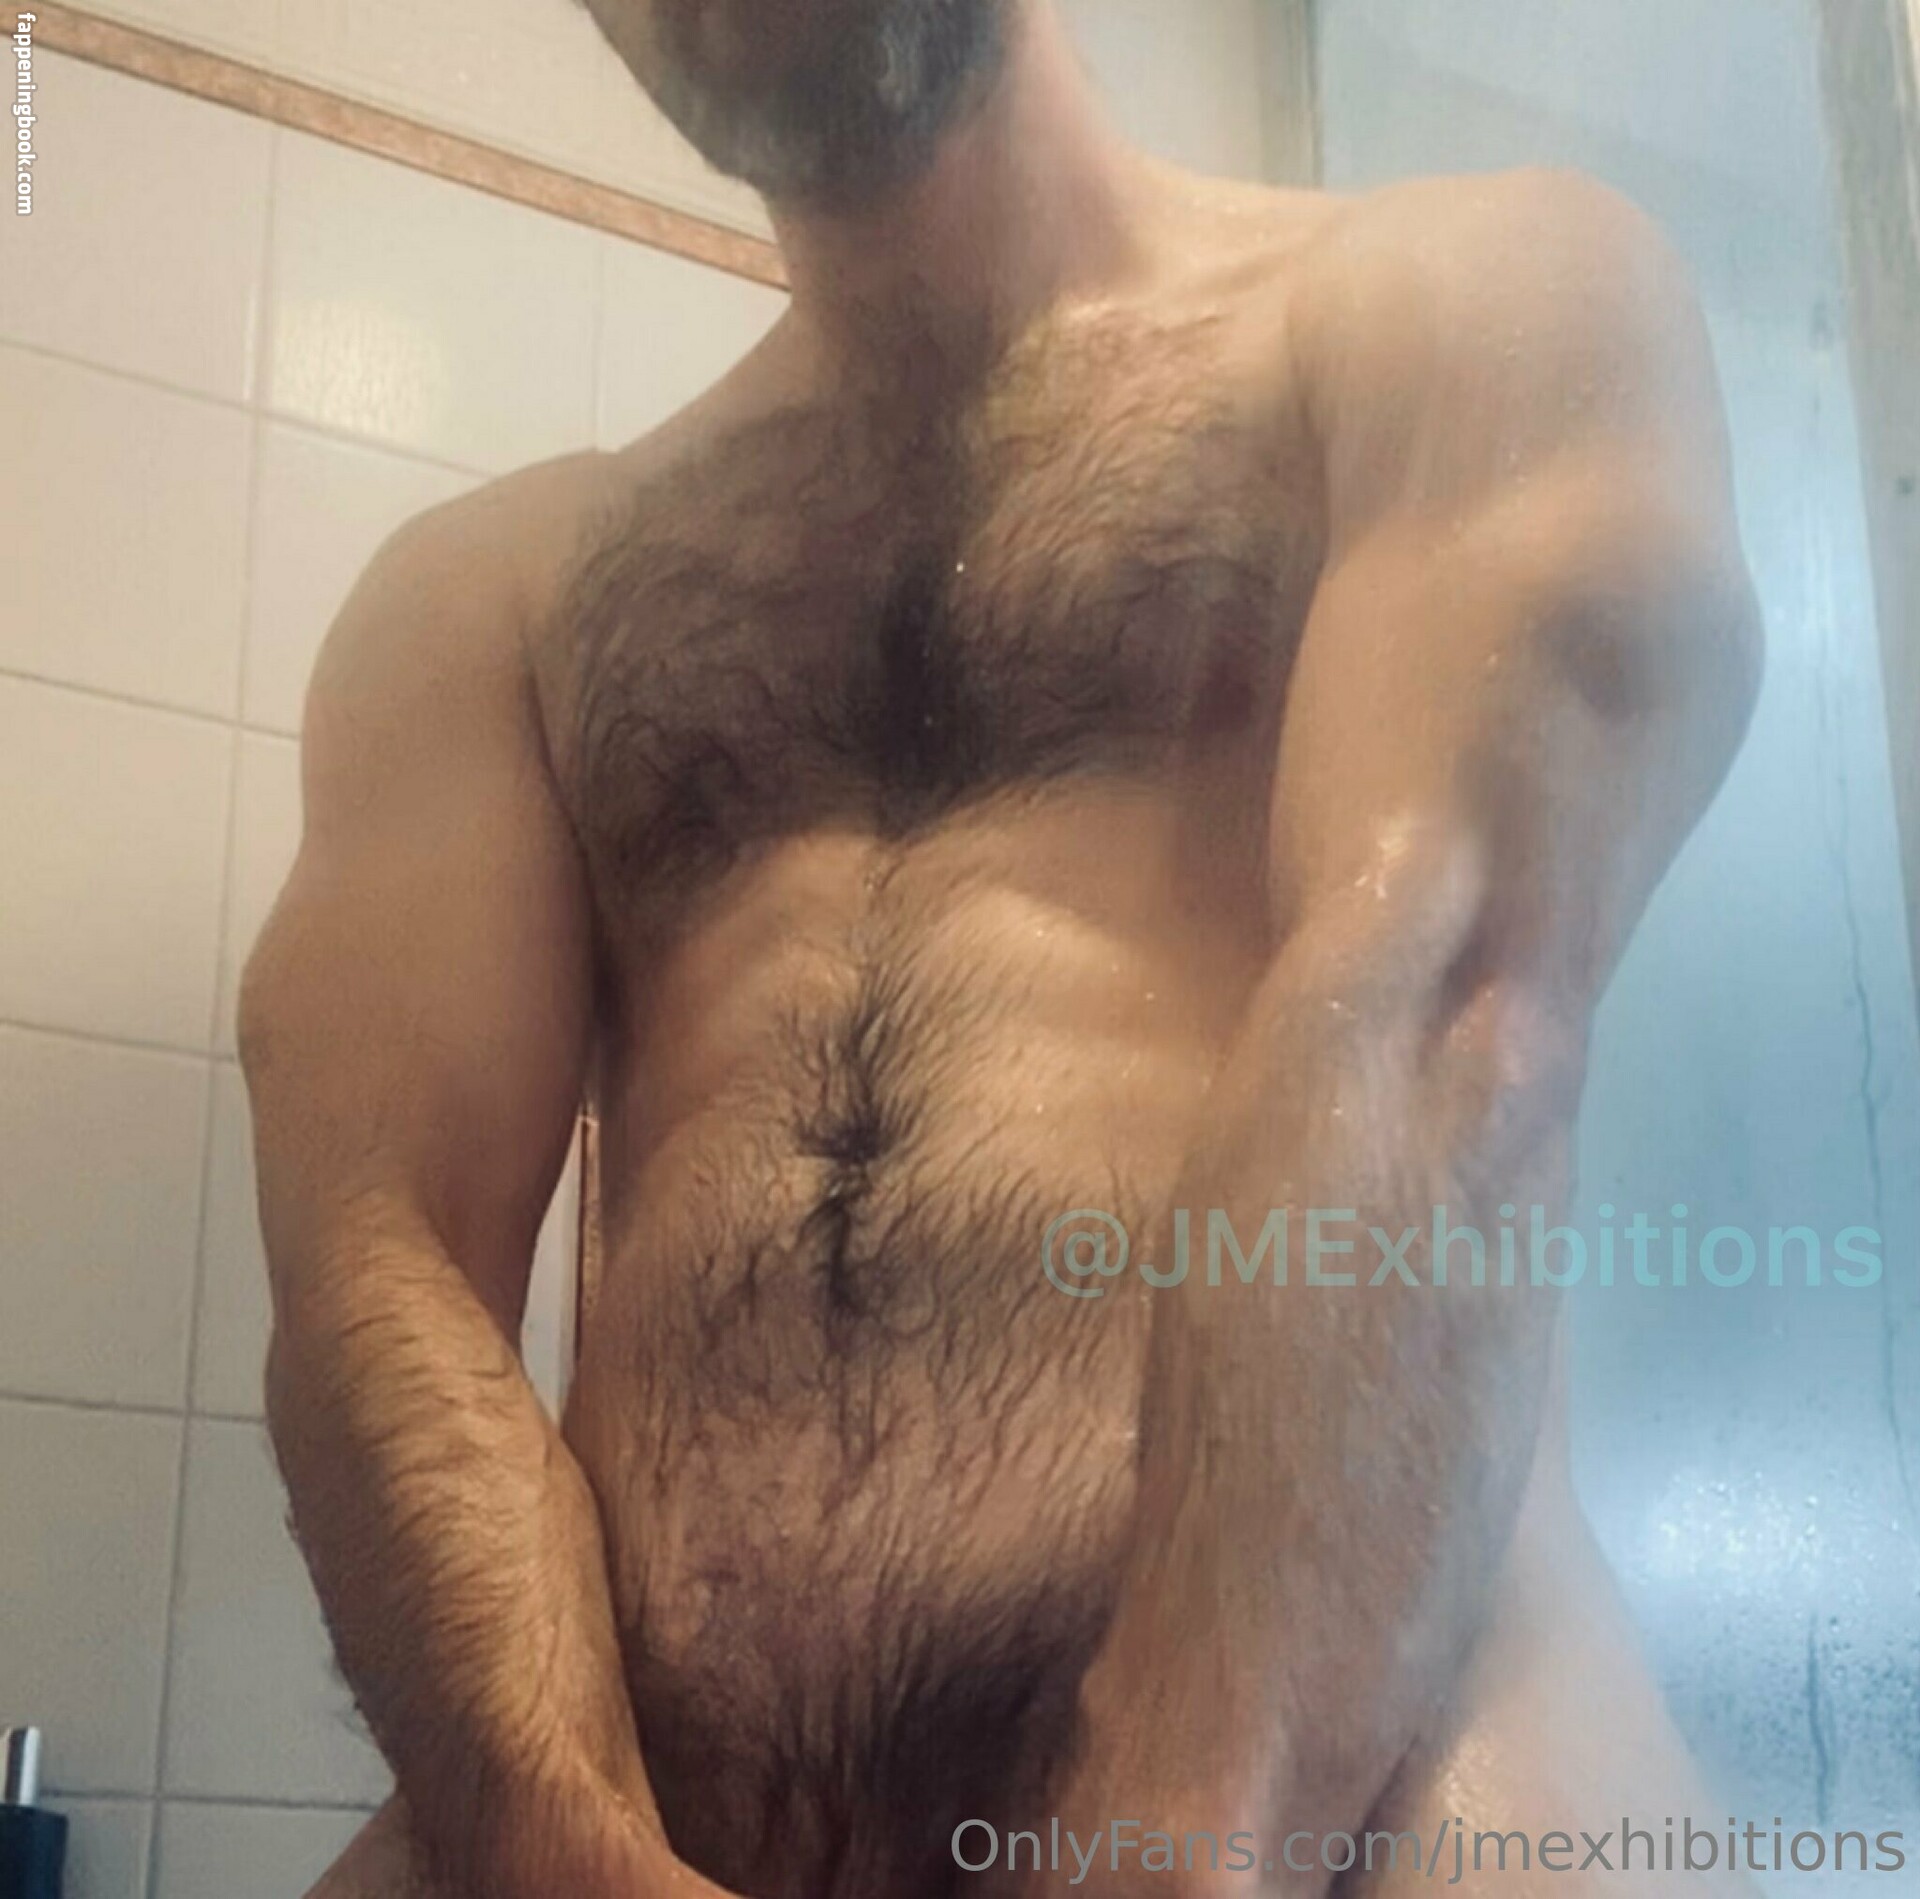 jmexhibitions Nude OnlyFans Leaks